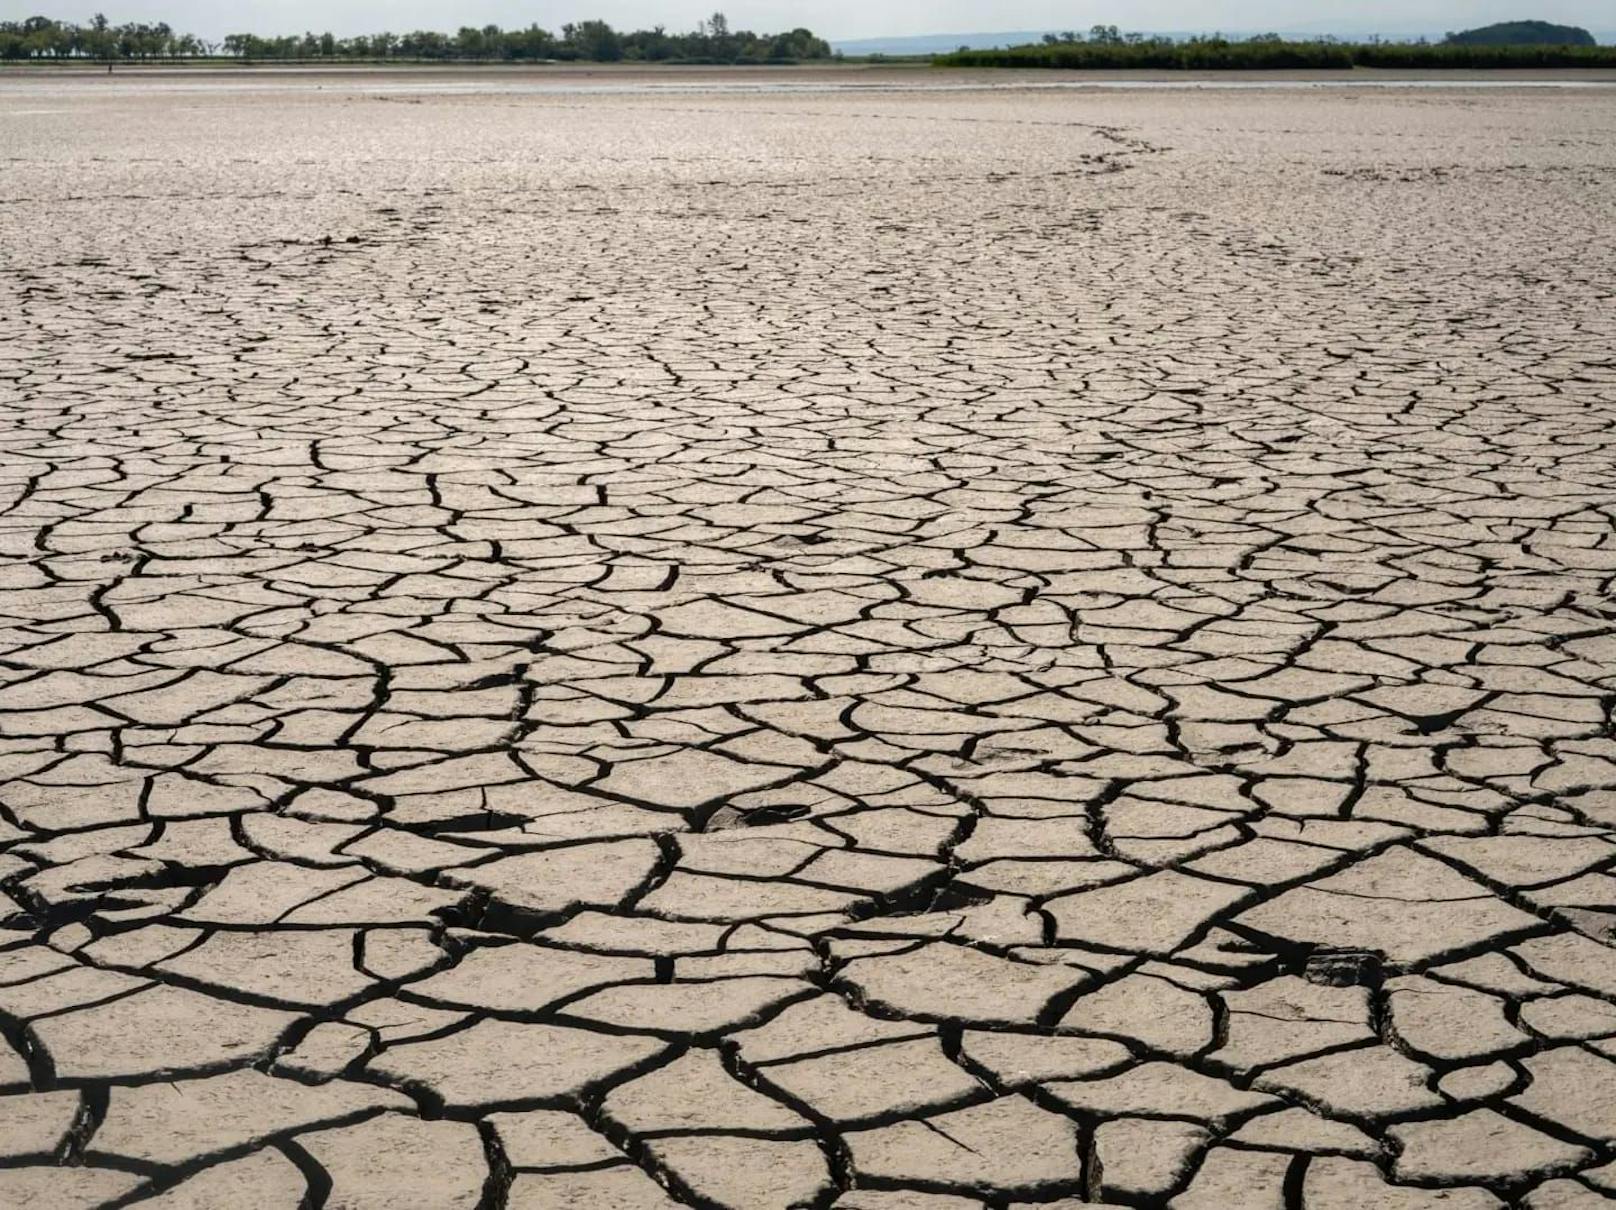 Extreme Dürre: Zicksee ist nun vollkommen verlandet